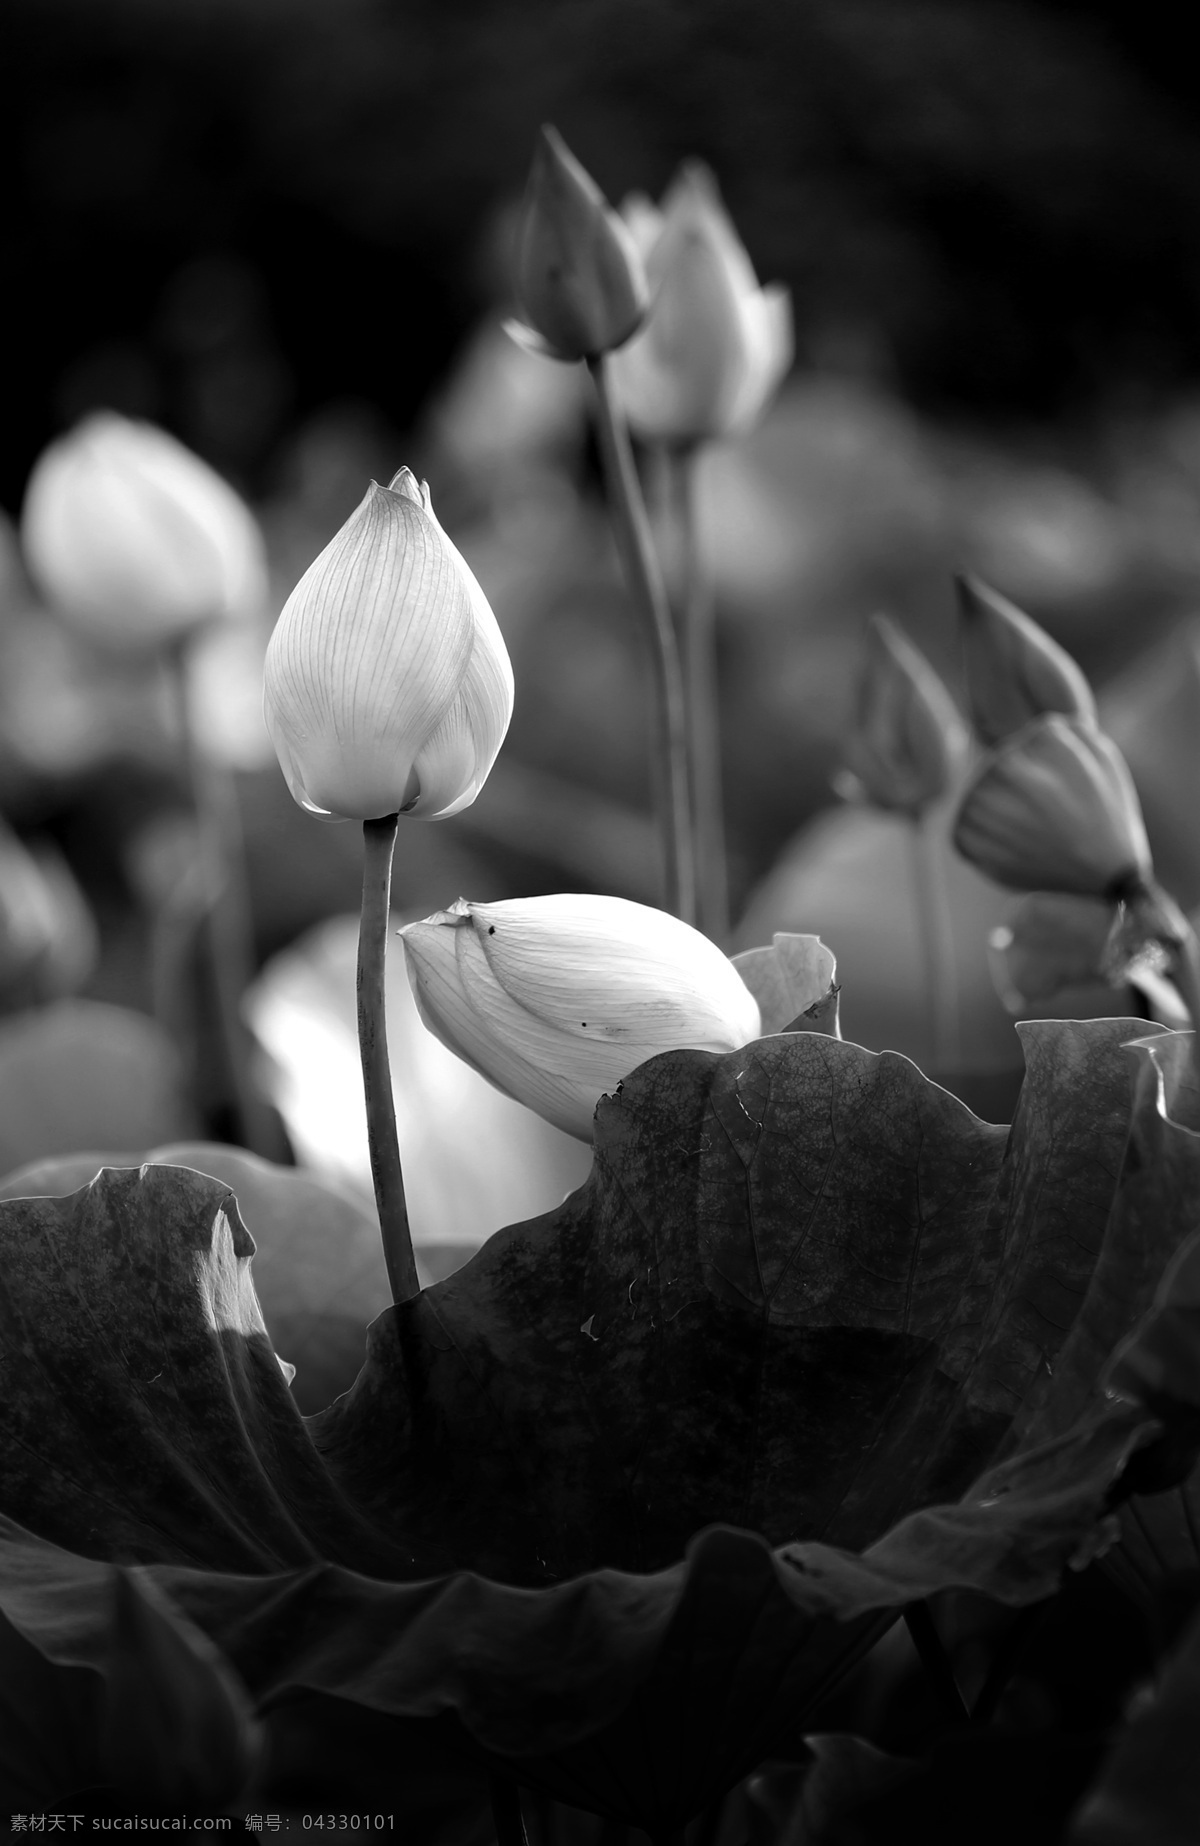 荷韵 荷花 花卉 黑白摄影 花卉摄影 黑白照片 生物世界 花草